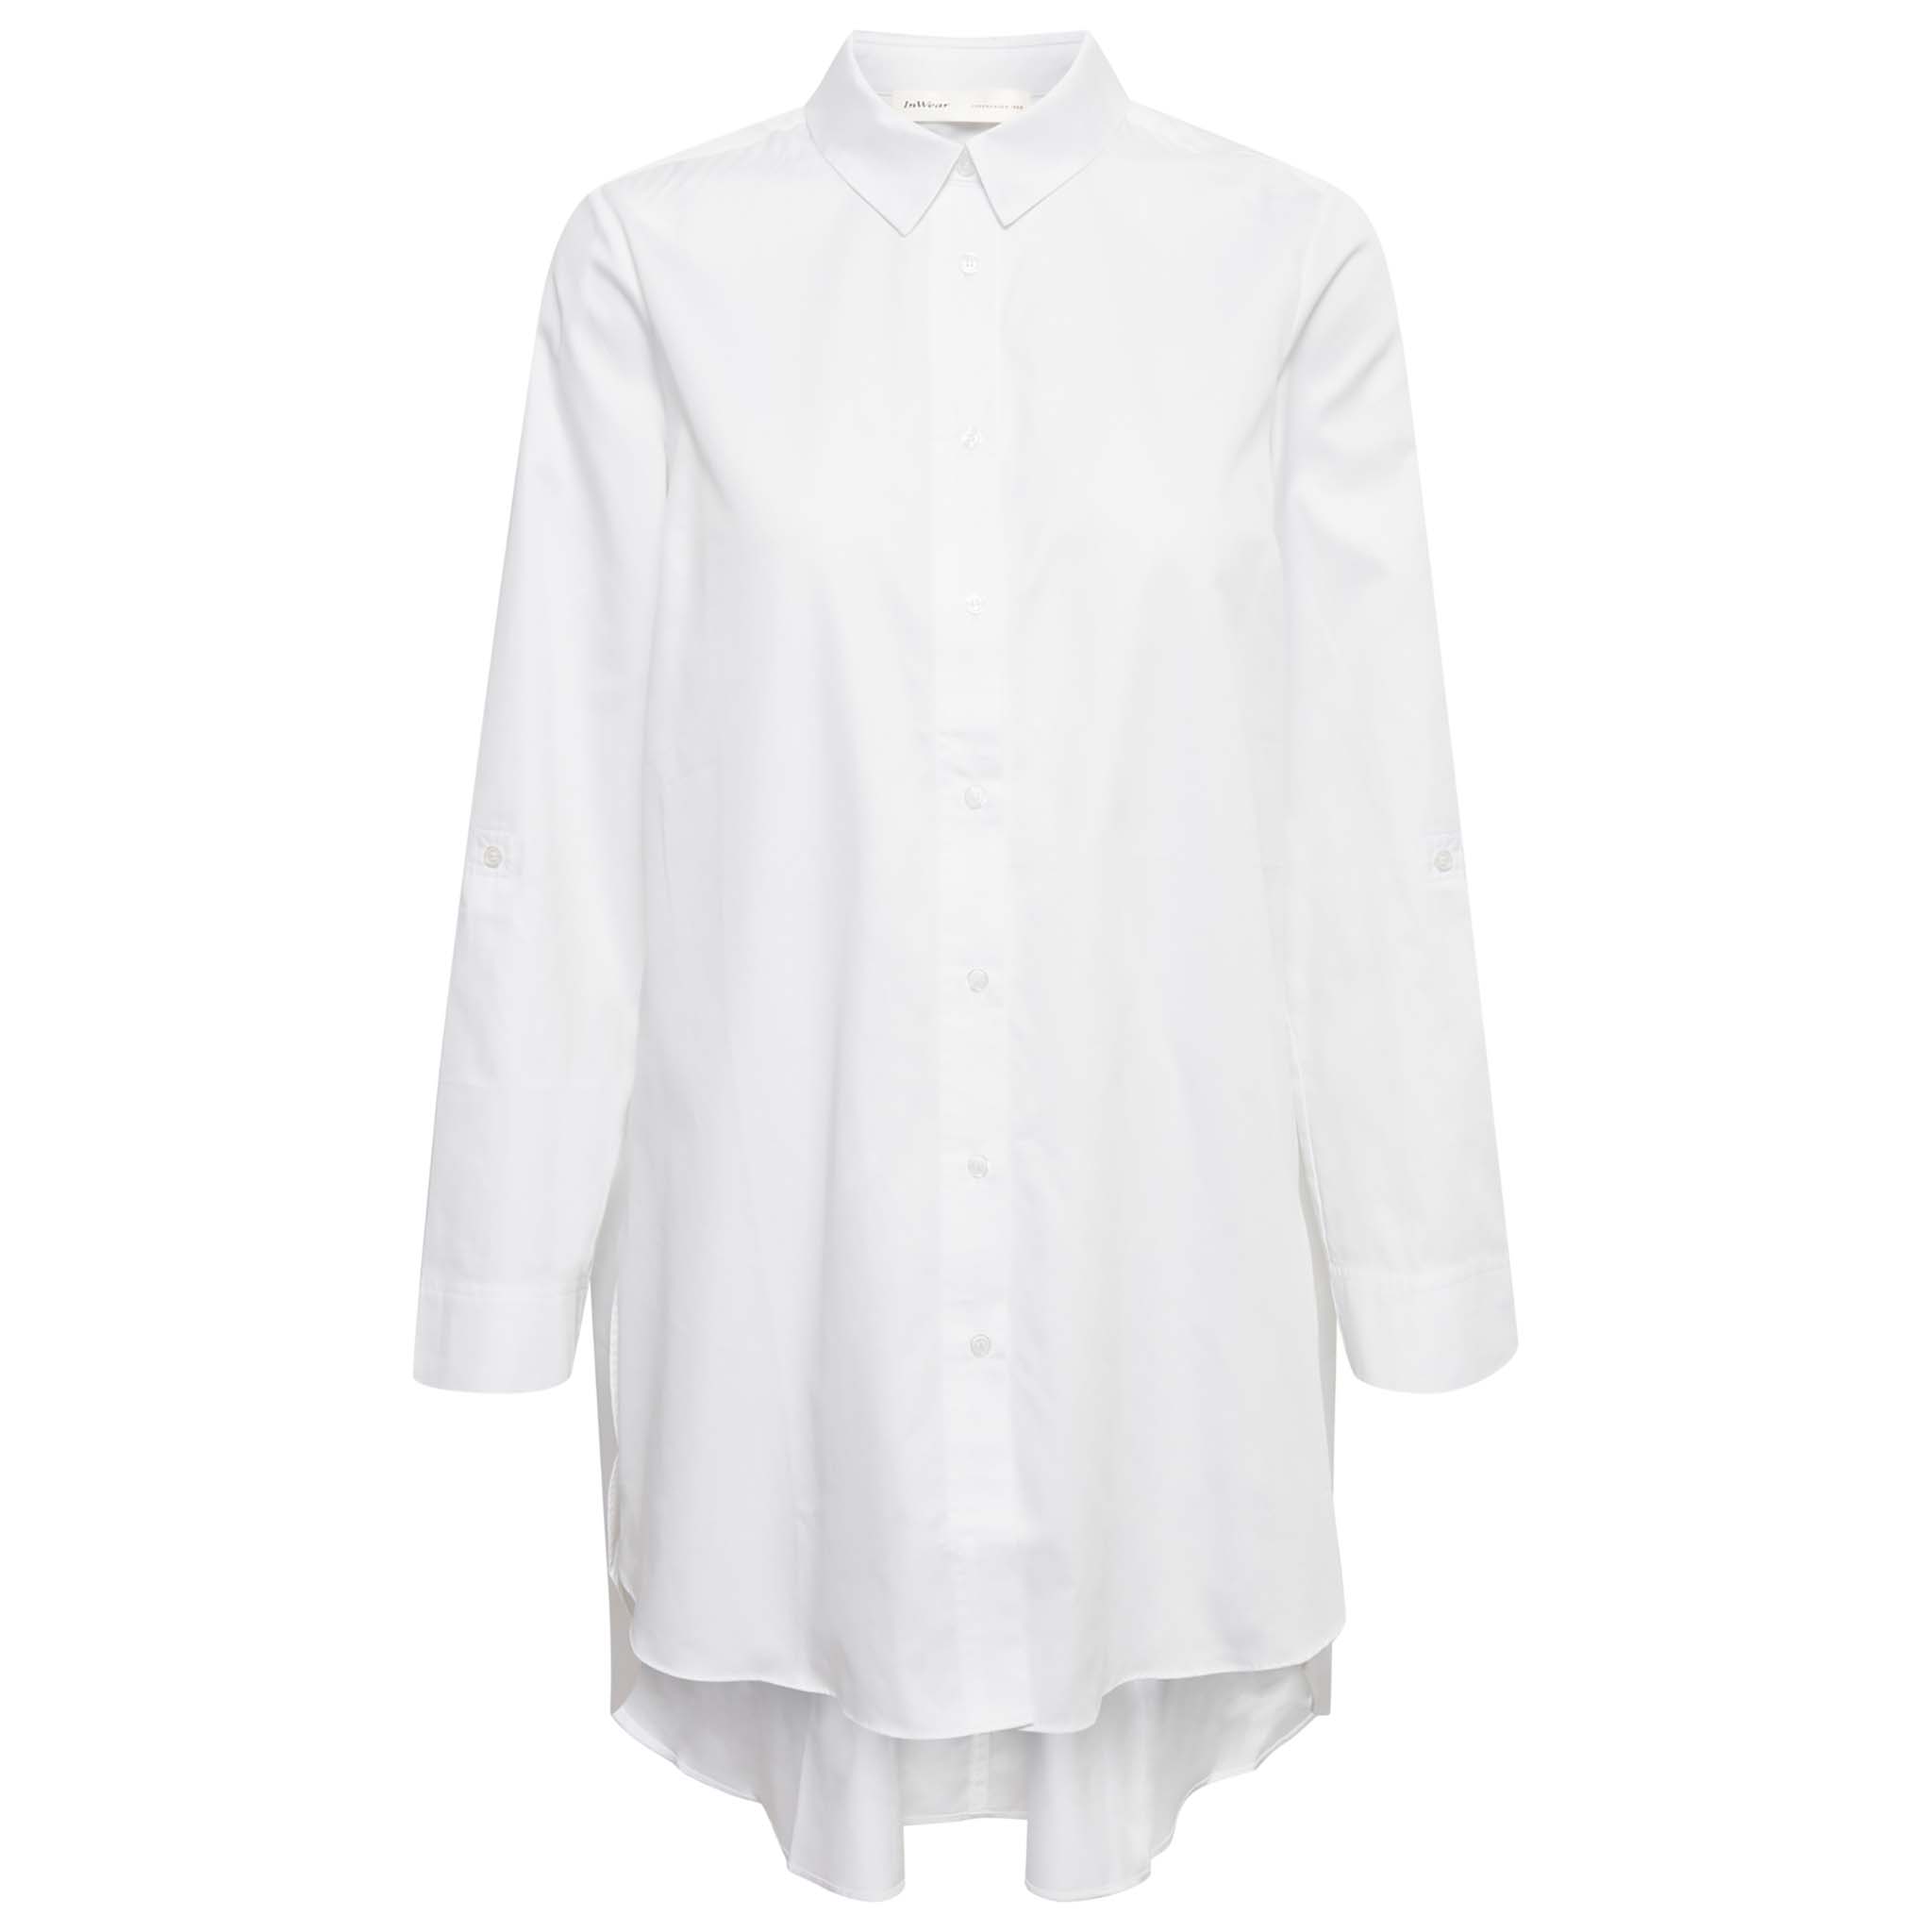 In Wear, valkoinen pitkä paitapusero/tunika. Takaosa on pidempi kuin etuosa. Etukuva.